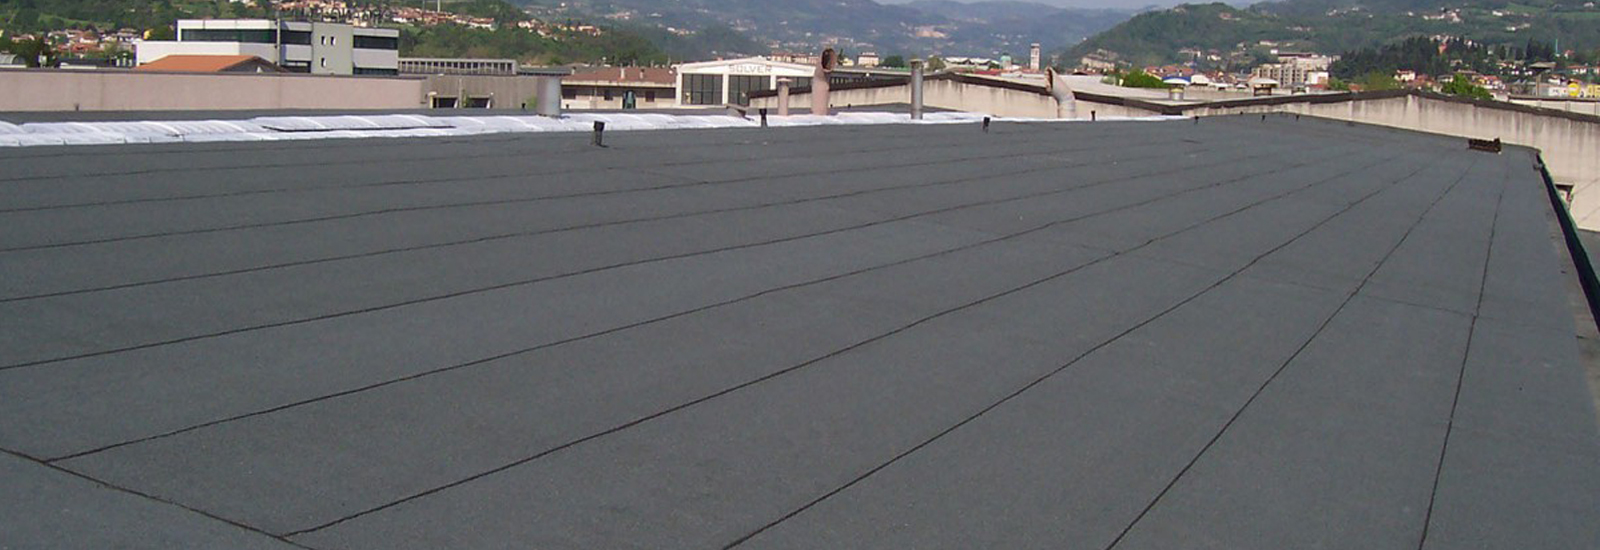 Impermeabilizzazione coperture edili Bergamo isolamento tetti e interventi di impermeabilizzazione tetti